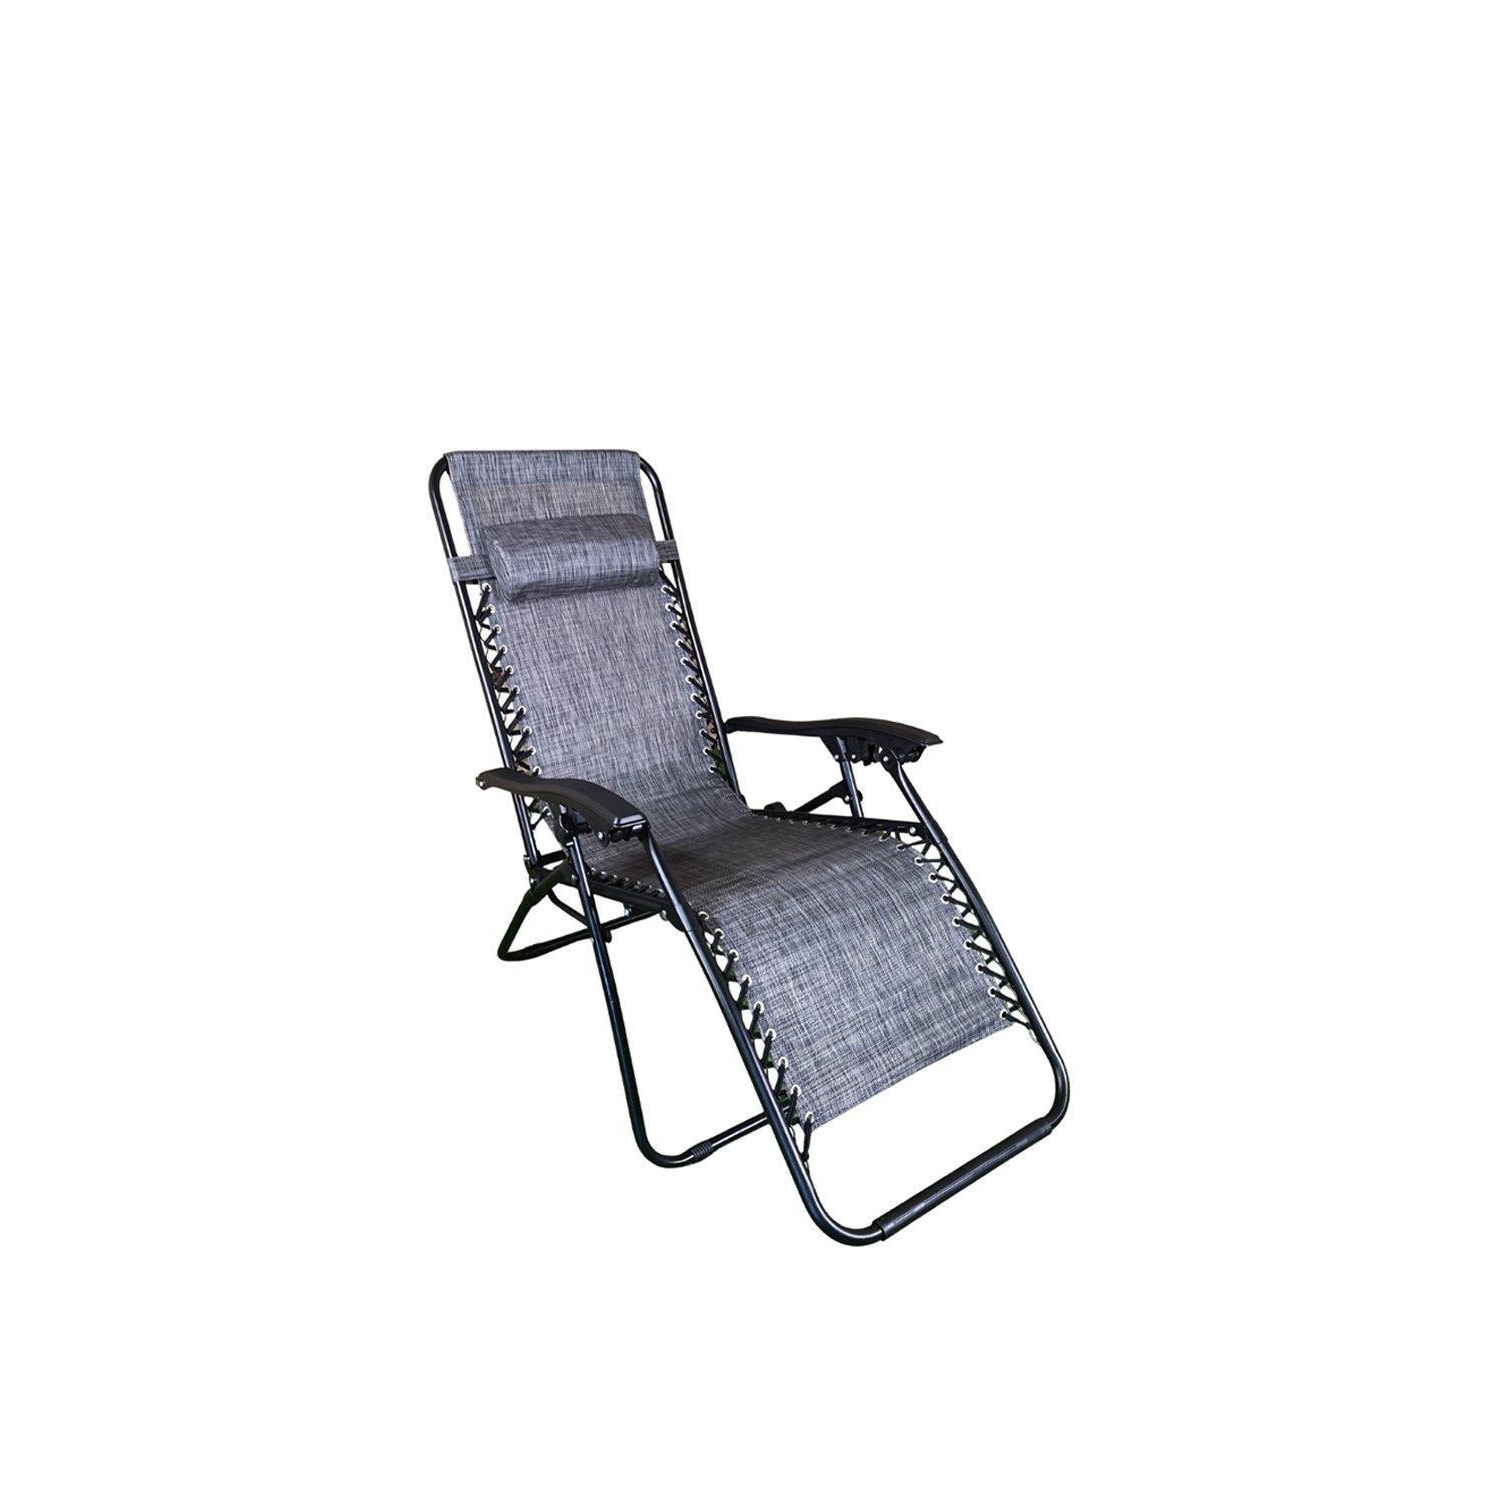 Luxury Zero Gravity Garden Relaxer Chair / Sun Lounger - Grey - image 1